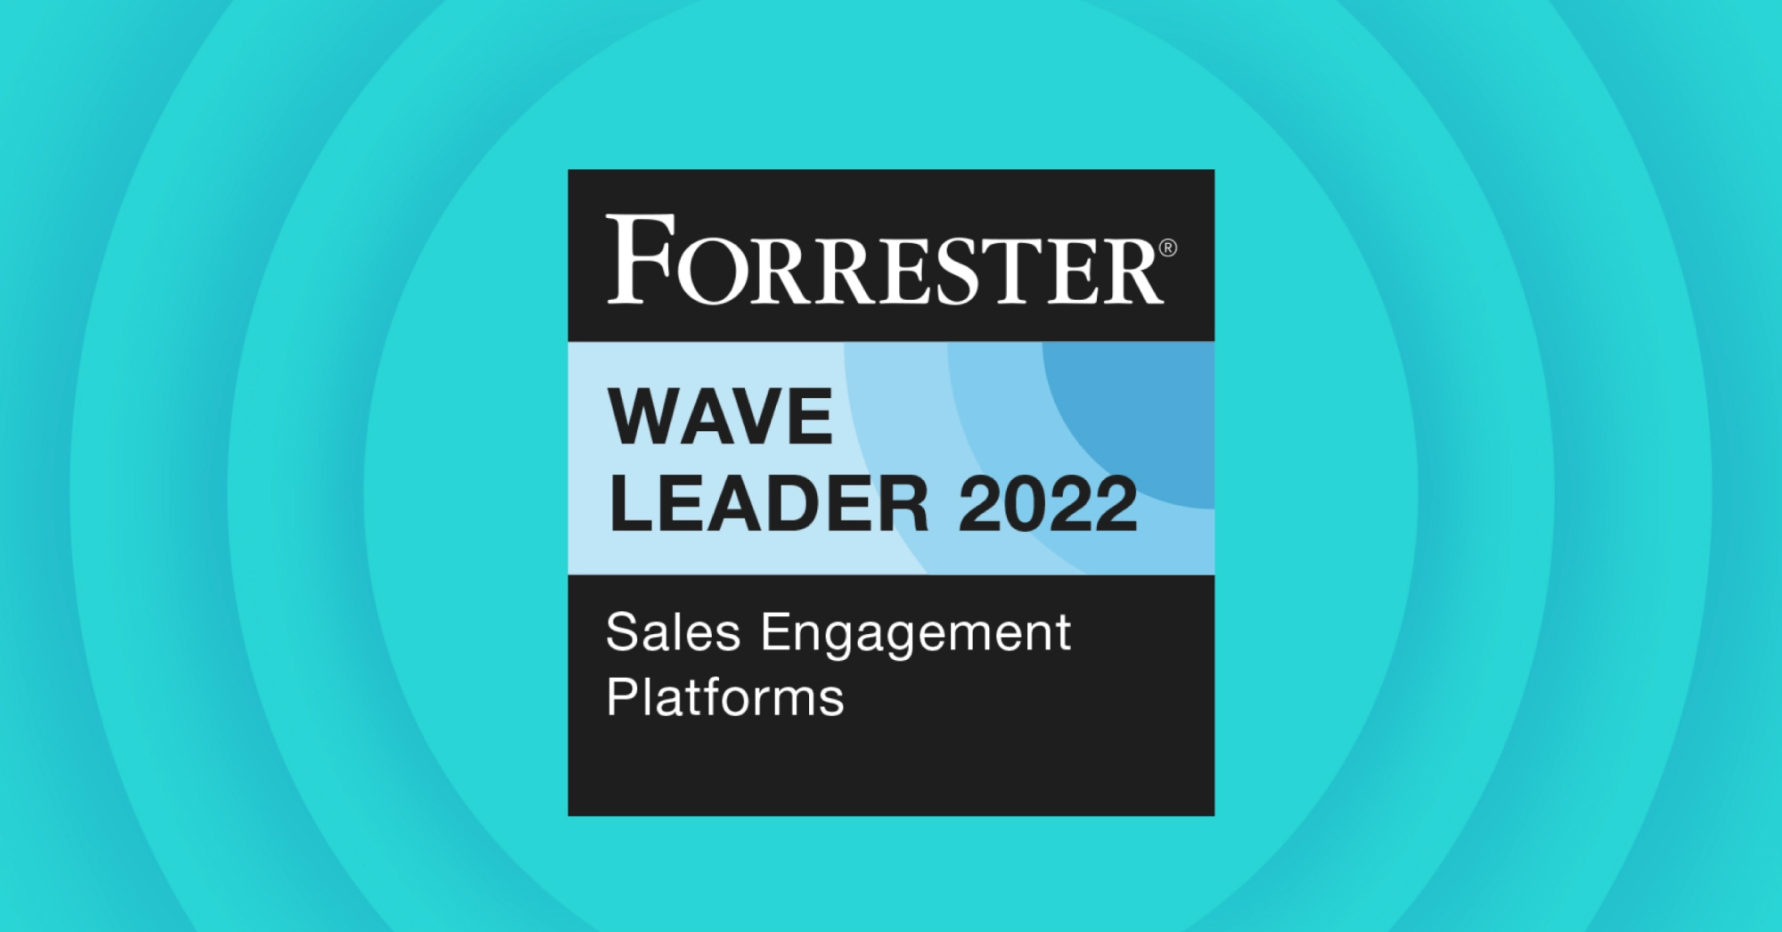 Badge that says Forrester Wave Leader 2022 - Sales Engagement Platforms